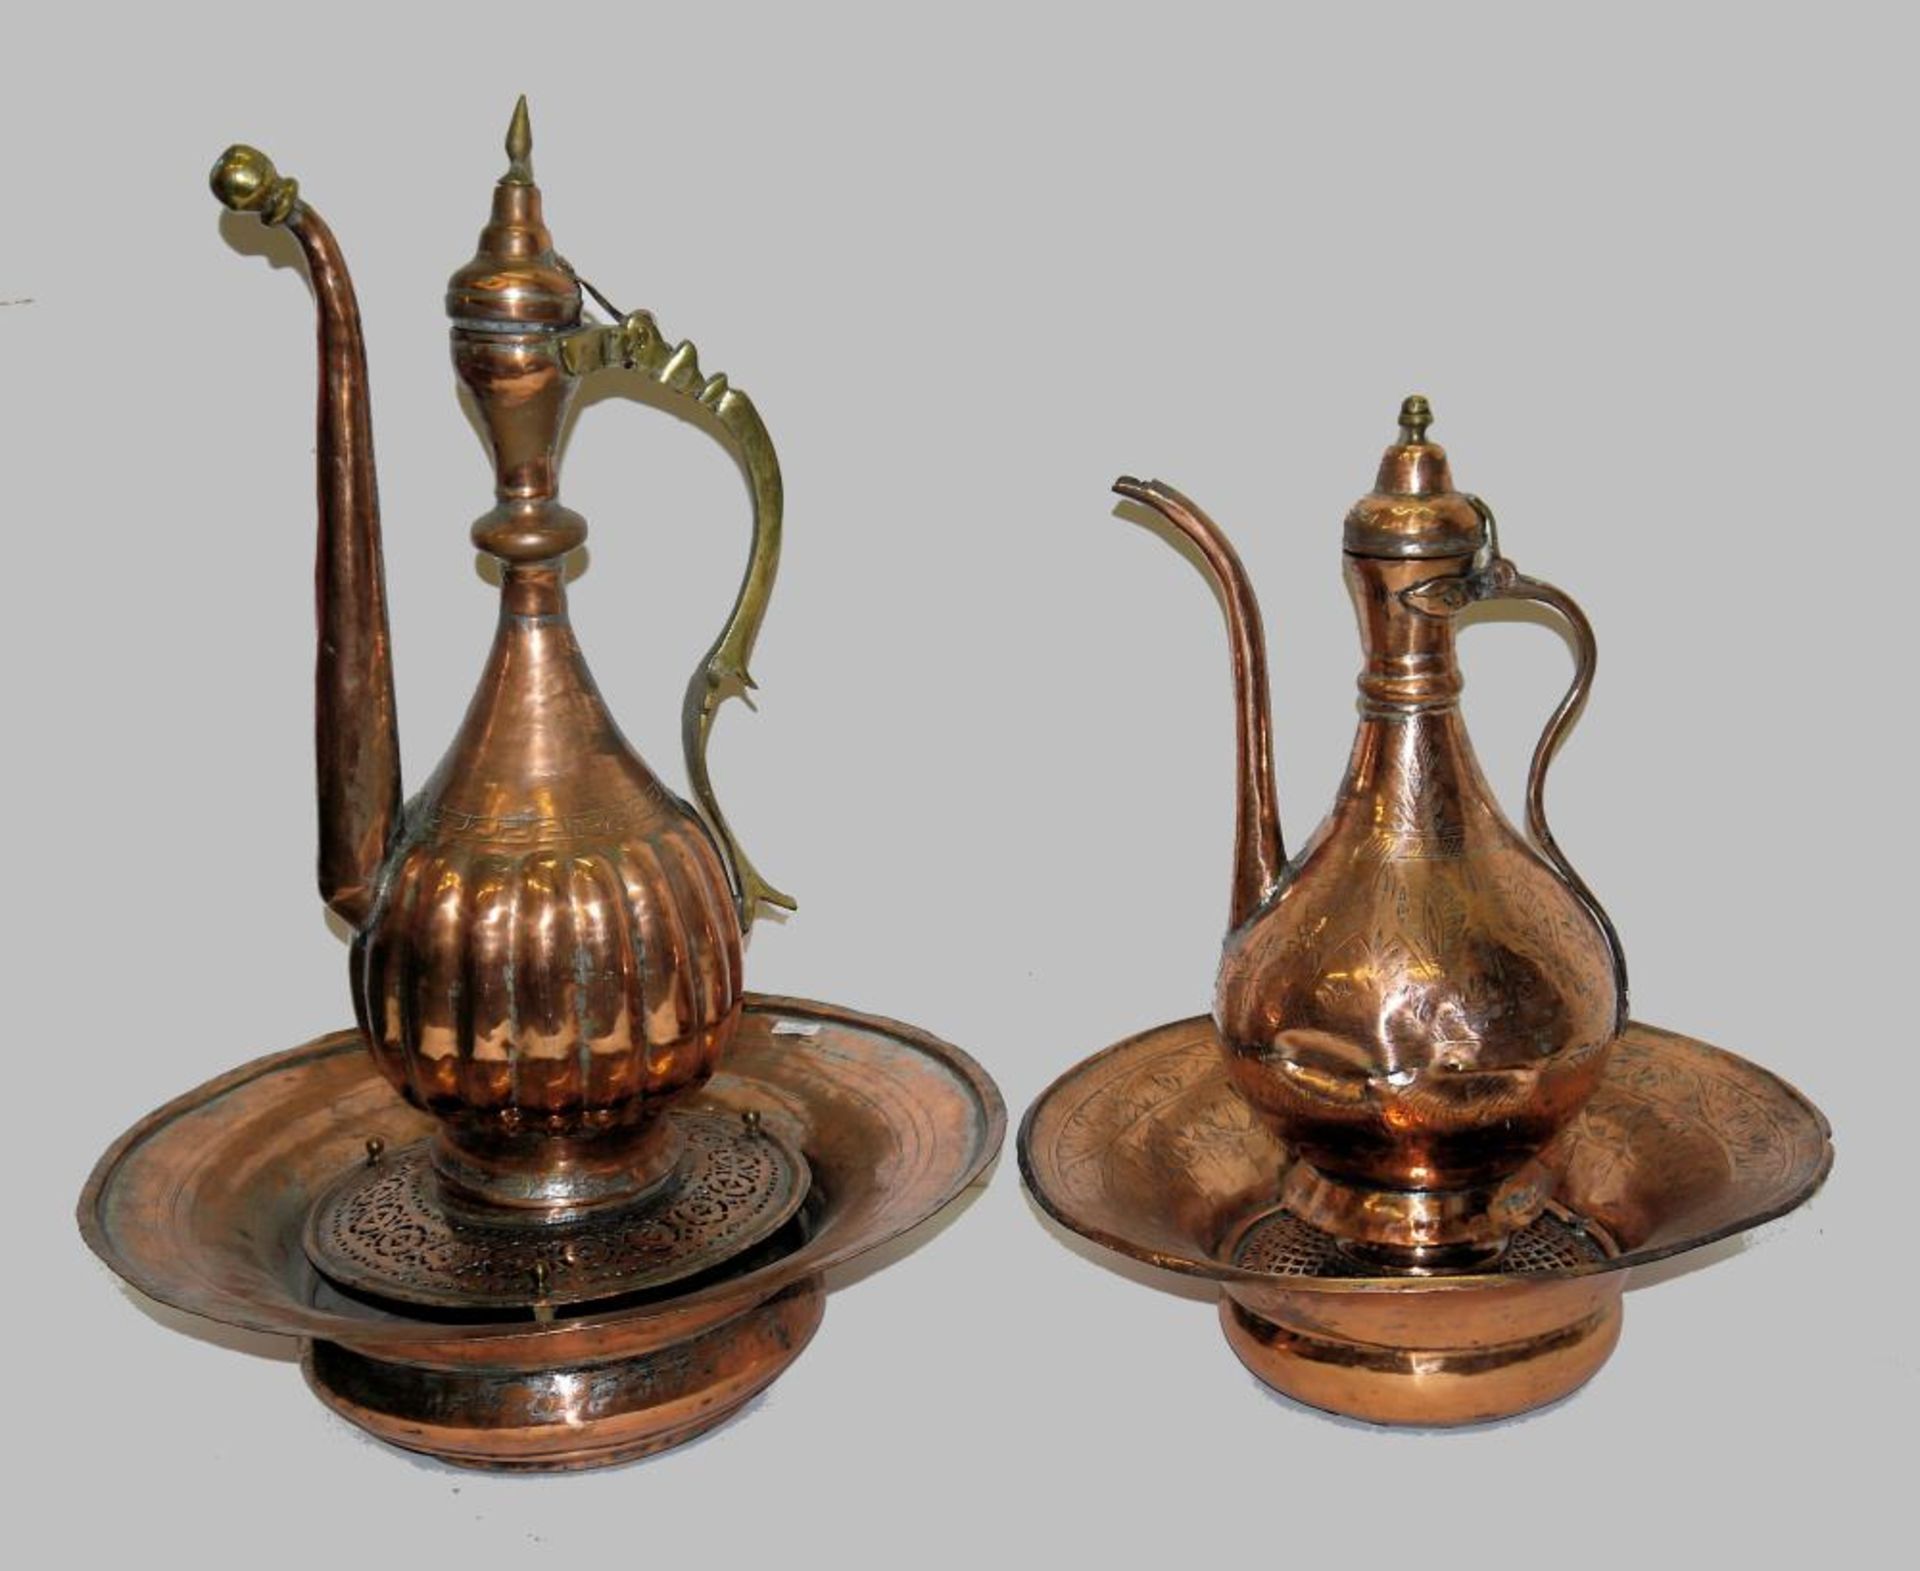 Zwei Wasserkannen „ibrik“ auf Becken, Kupfer, osmanisch, spätes 19. Jh./um 1900 Zwei birnförmige